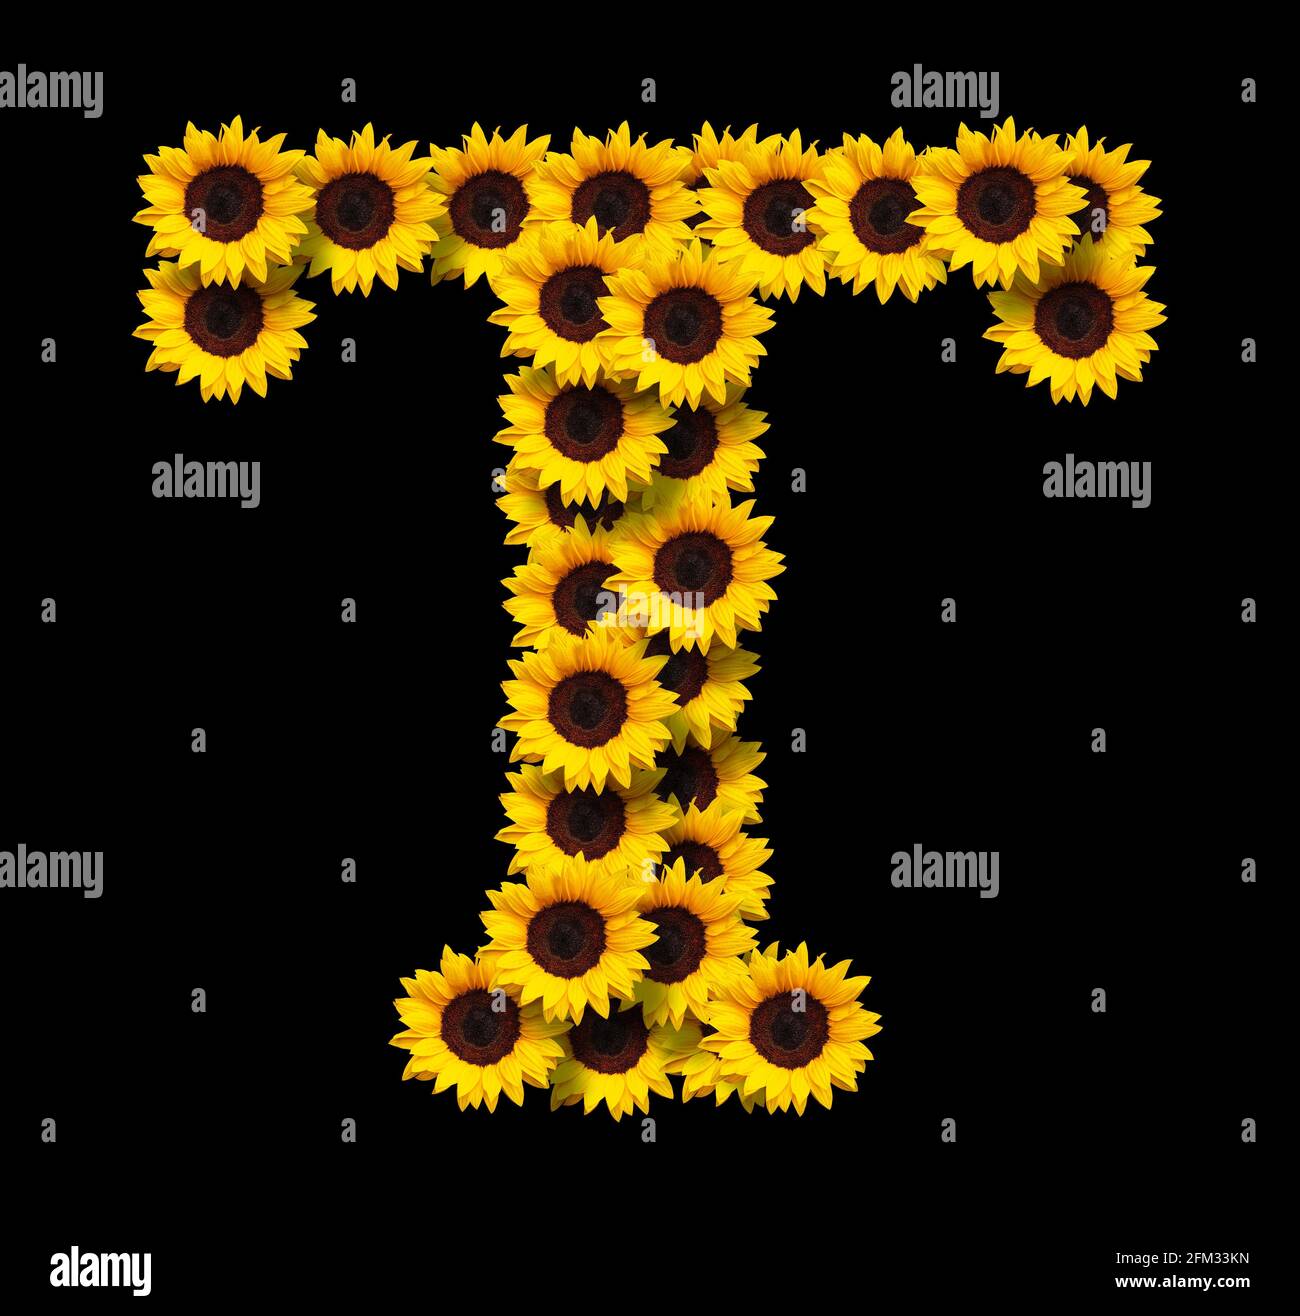 Lettre majuscule T faite de fleurs jaunes de tournesol isolées sur fond noir. Élément de conception pour les conceptions de concepts d'amour. Idéal pour les mères et les jours de mères Banque D'Images